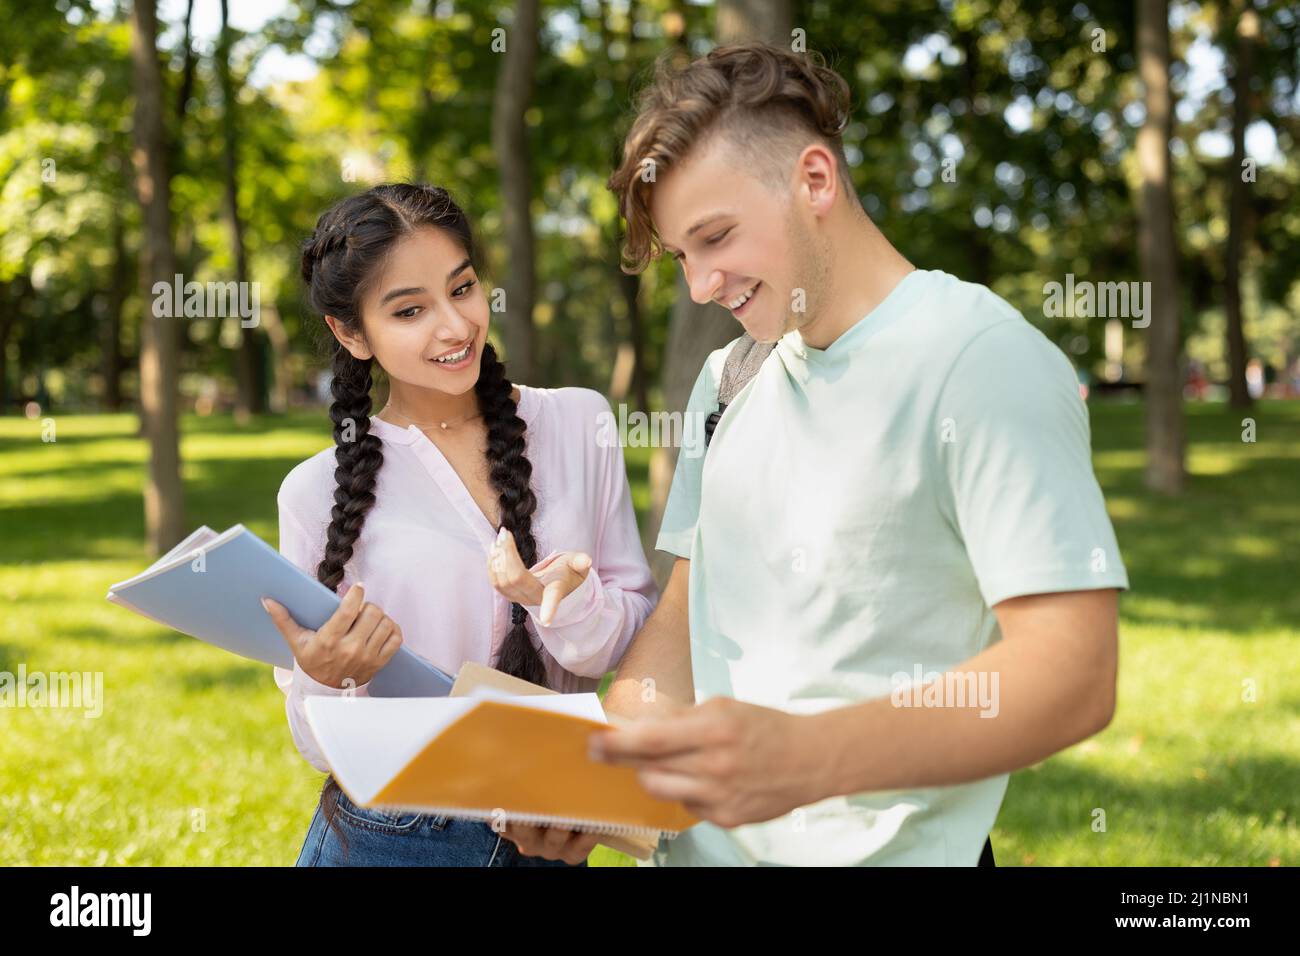 Glückliche, vielfältige Studenten studieren mit Büchern, bereiten sich auf den Unterricht vor, während sie auf dem Universitätscampus im Freien spazieren gehen Stockfoto